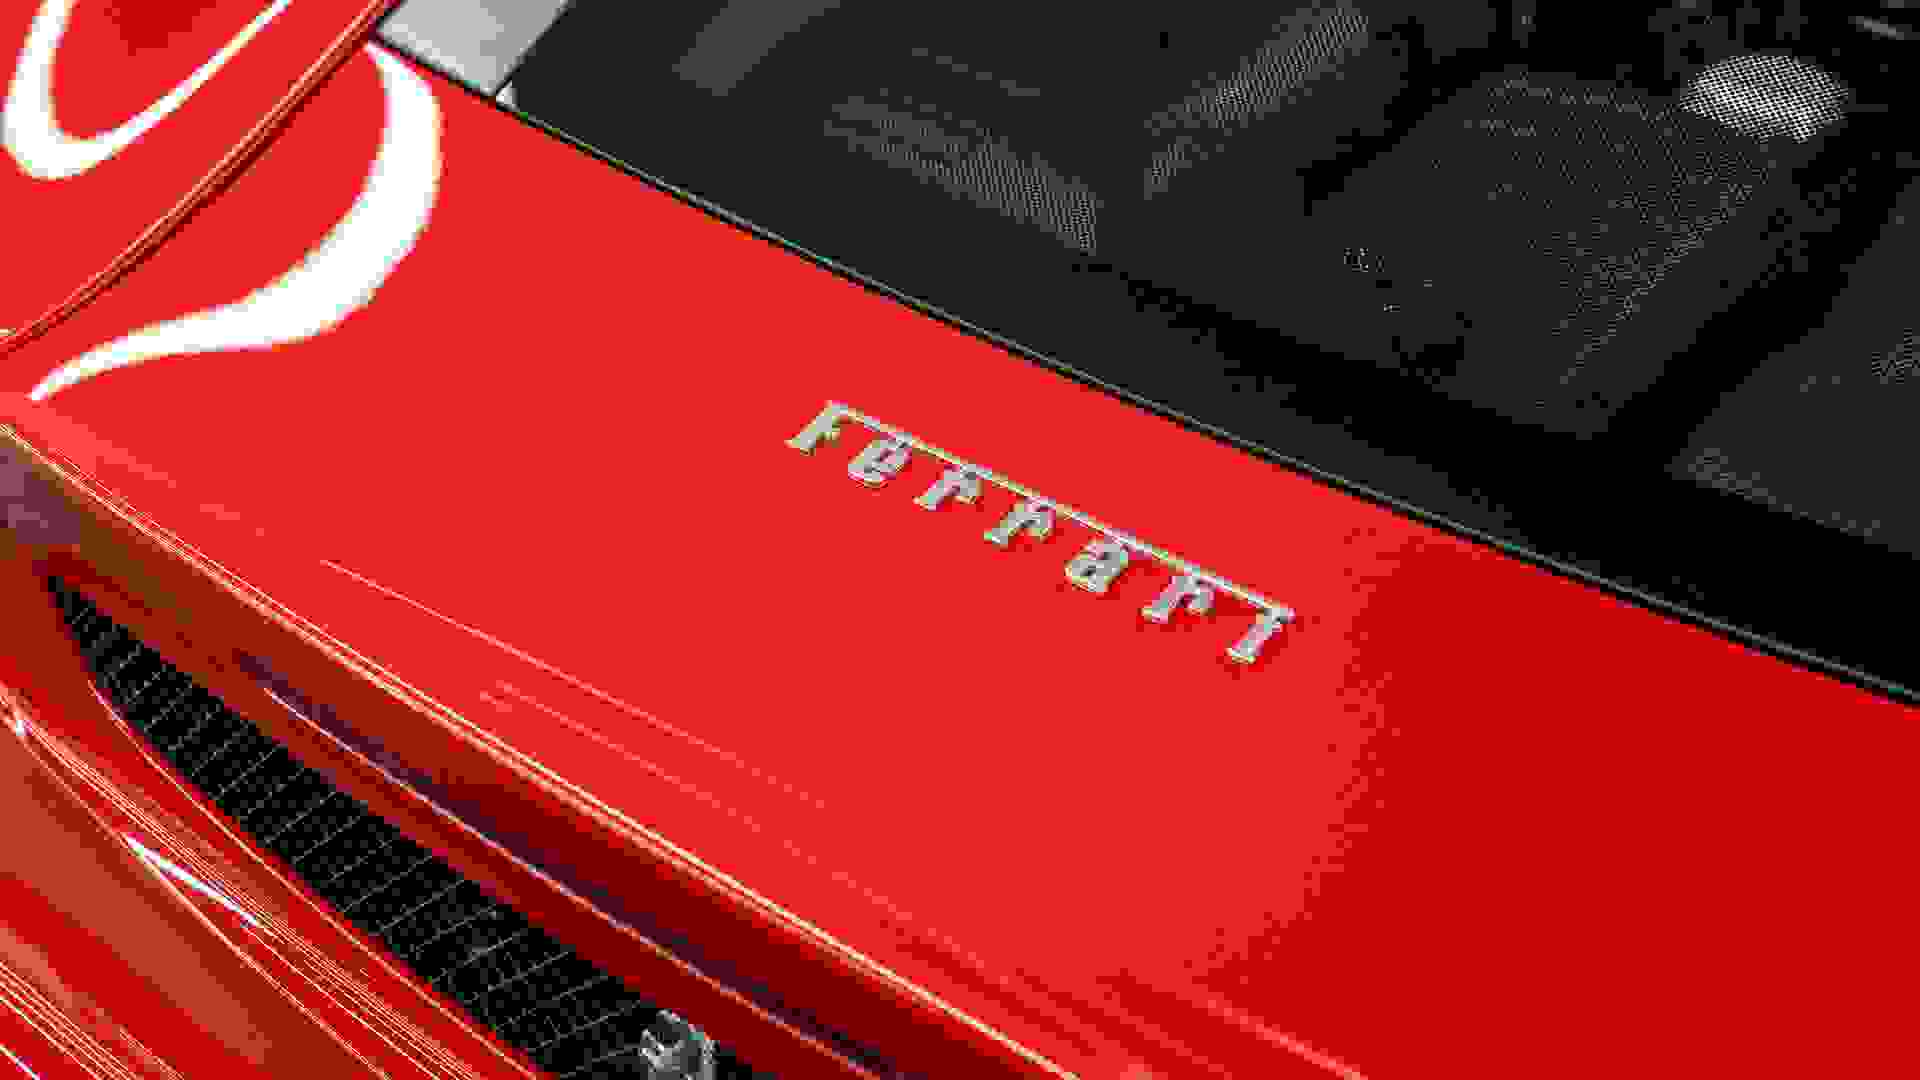 Ferrari F430 Photo 72d4e606-f6b7-4723-9cc8-abda1de2dd53.jpg